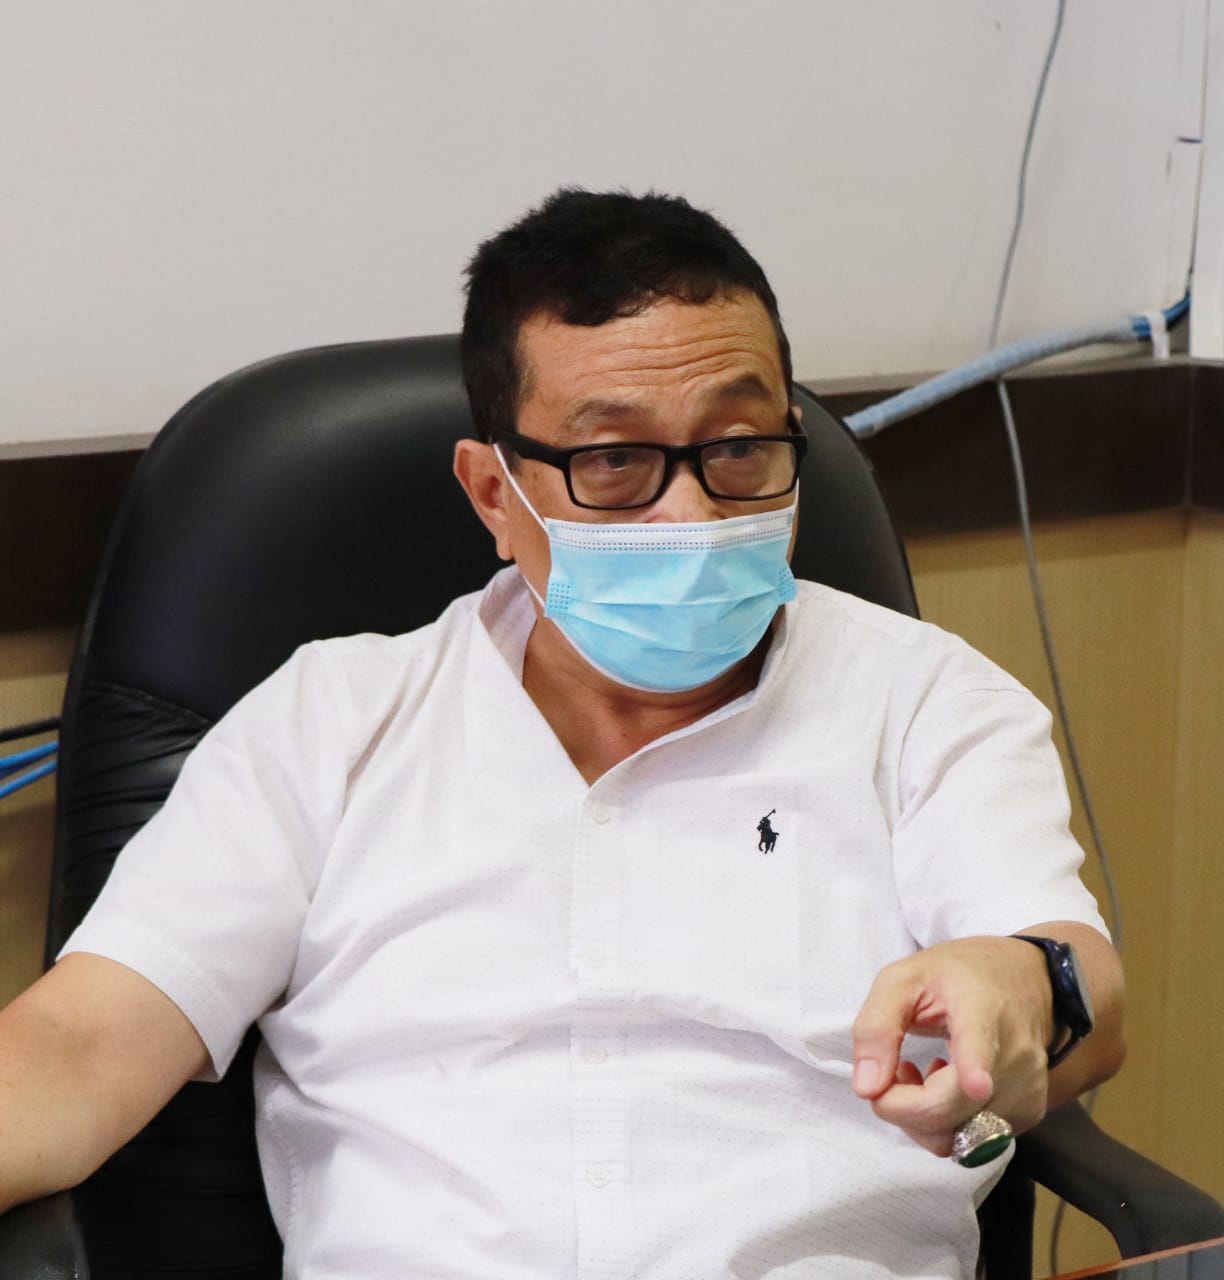 UPDATE ZONASI Kabupaten Kota di Sumatera Barat Minggu ke 50 Pandemi Covid-19 (Periode 21 Februari 2021 - 27 Februari 2021)